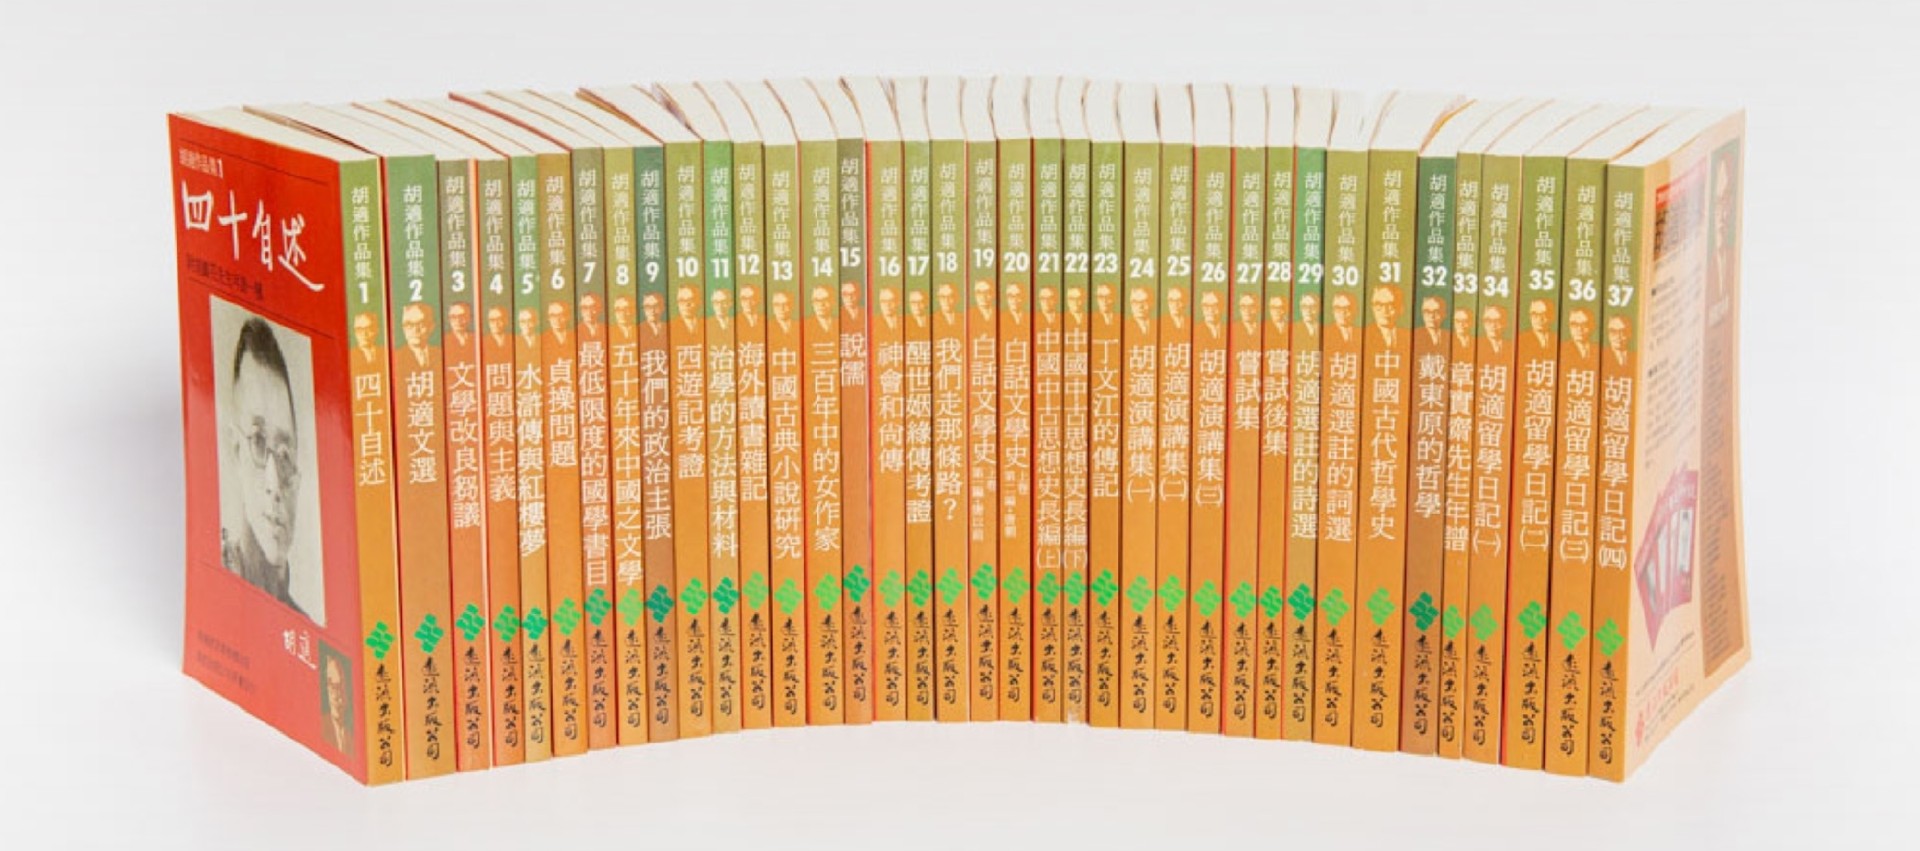 「胡適作品集」書系1-37冊，胡適紀念館授權遠流出版社印行，1986年初版；遠流出版社提供-圖片